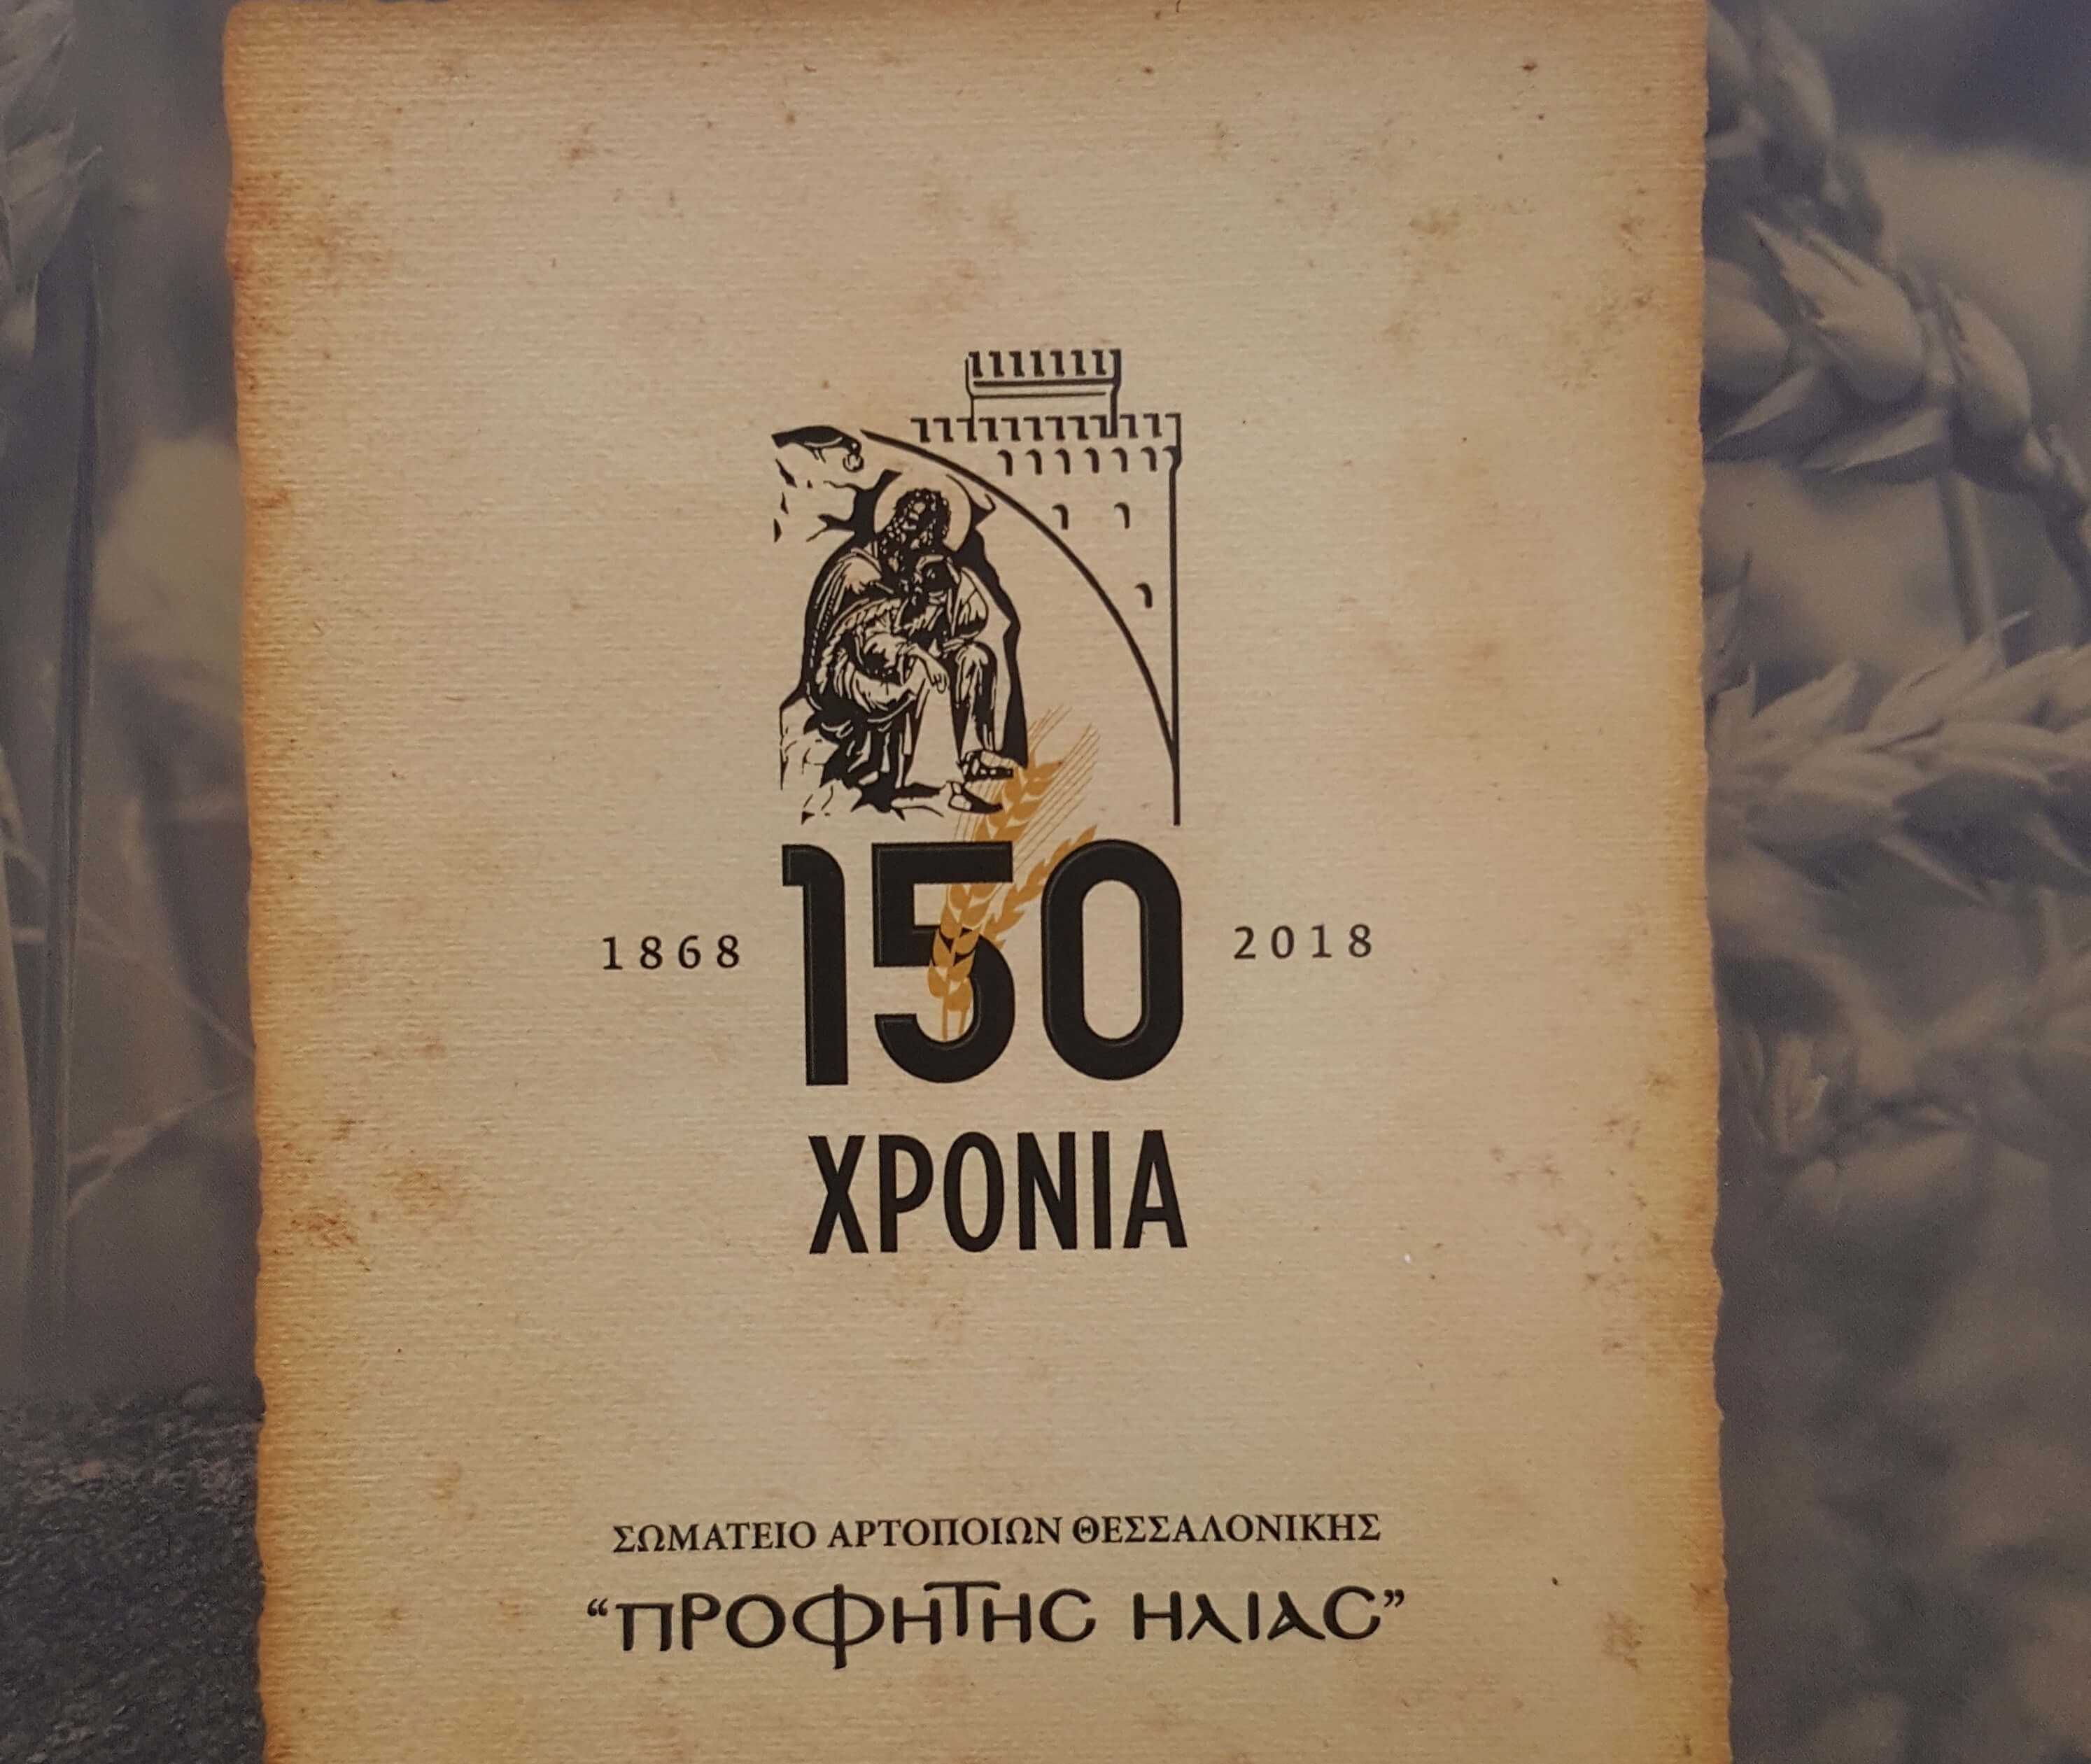 Θεσσαλονίκη: Ιστορικό λεύκωμα για τα 150 χρόνια του Σωματείου Αρτοποιών “Προφήτης Ηλίας” [pic]